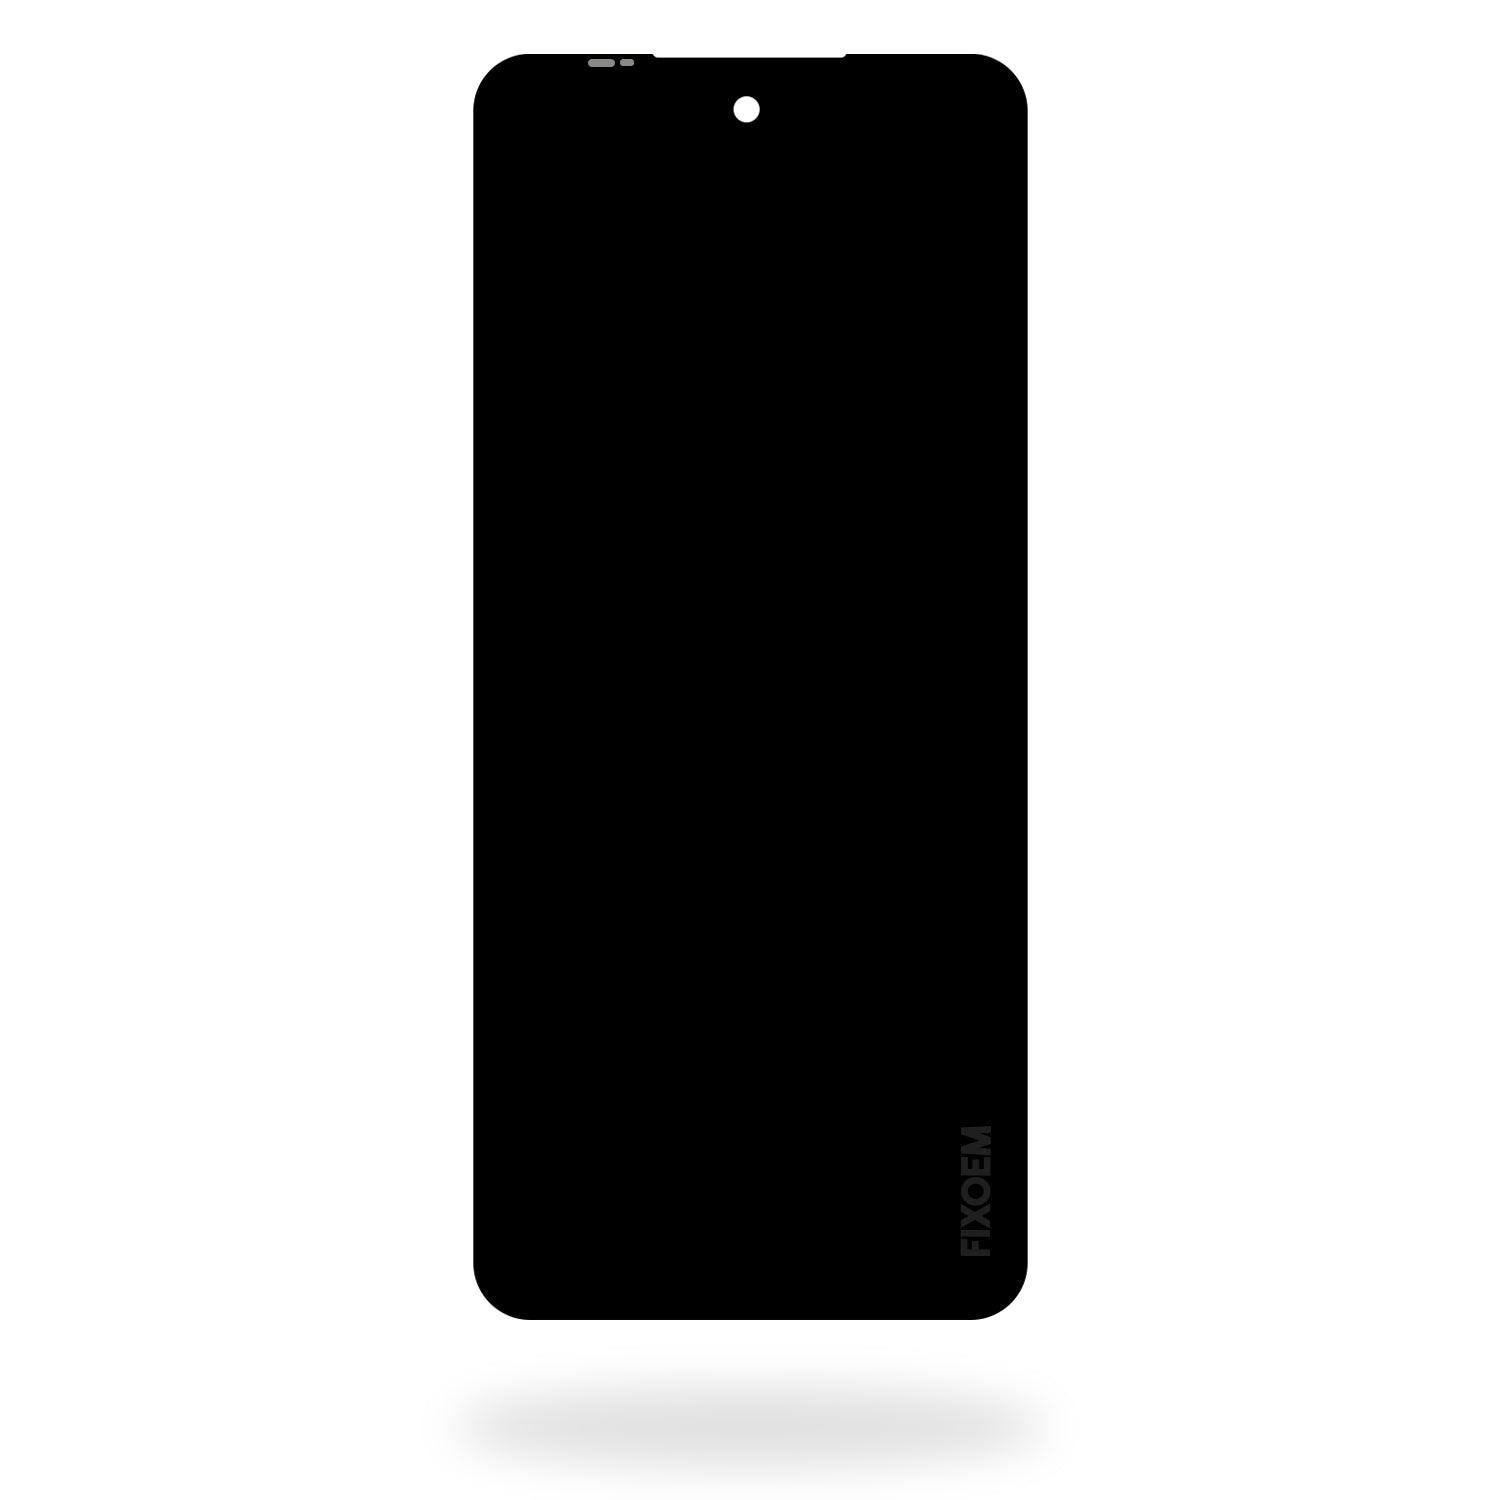 Display Moto G Stylus 5G 2022 XT2131 -DL -1 -3 -4 a solo $ 340.00 Refaccion y puestos celulares, refurbish y microelectronica.- FixOEM